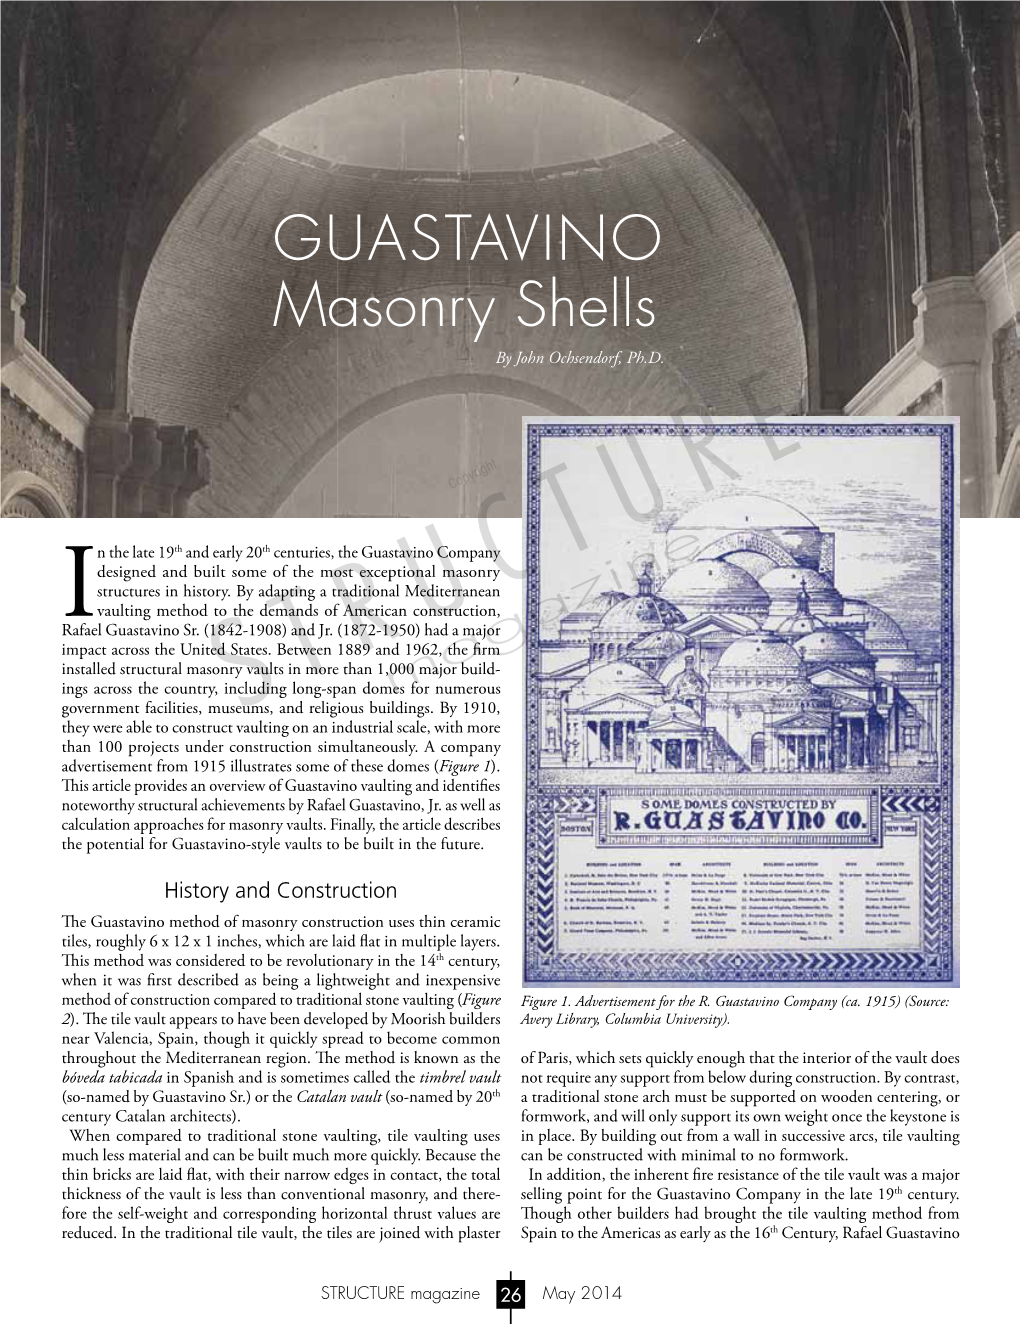 Guastavino Masonry Shells by John Ochsendorf, Ph.D